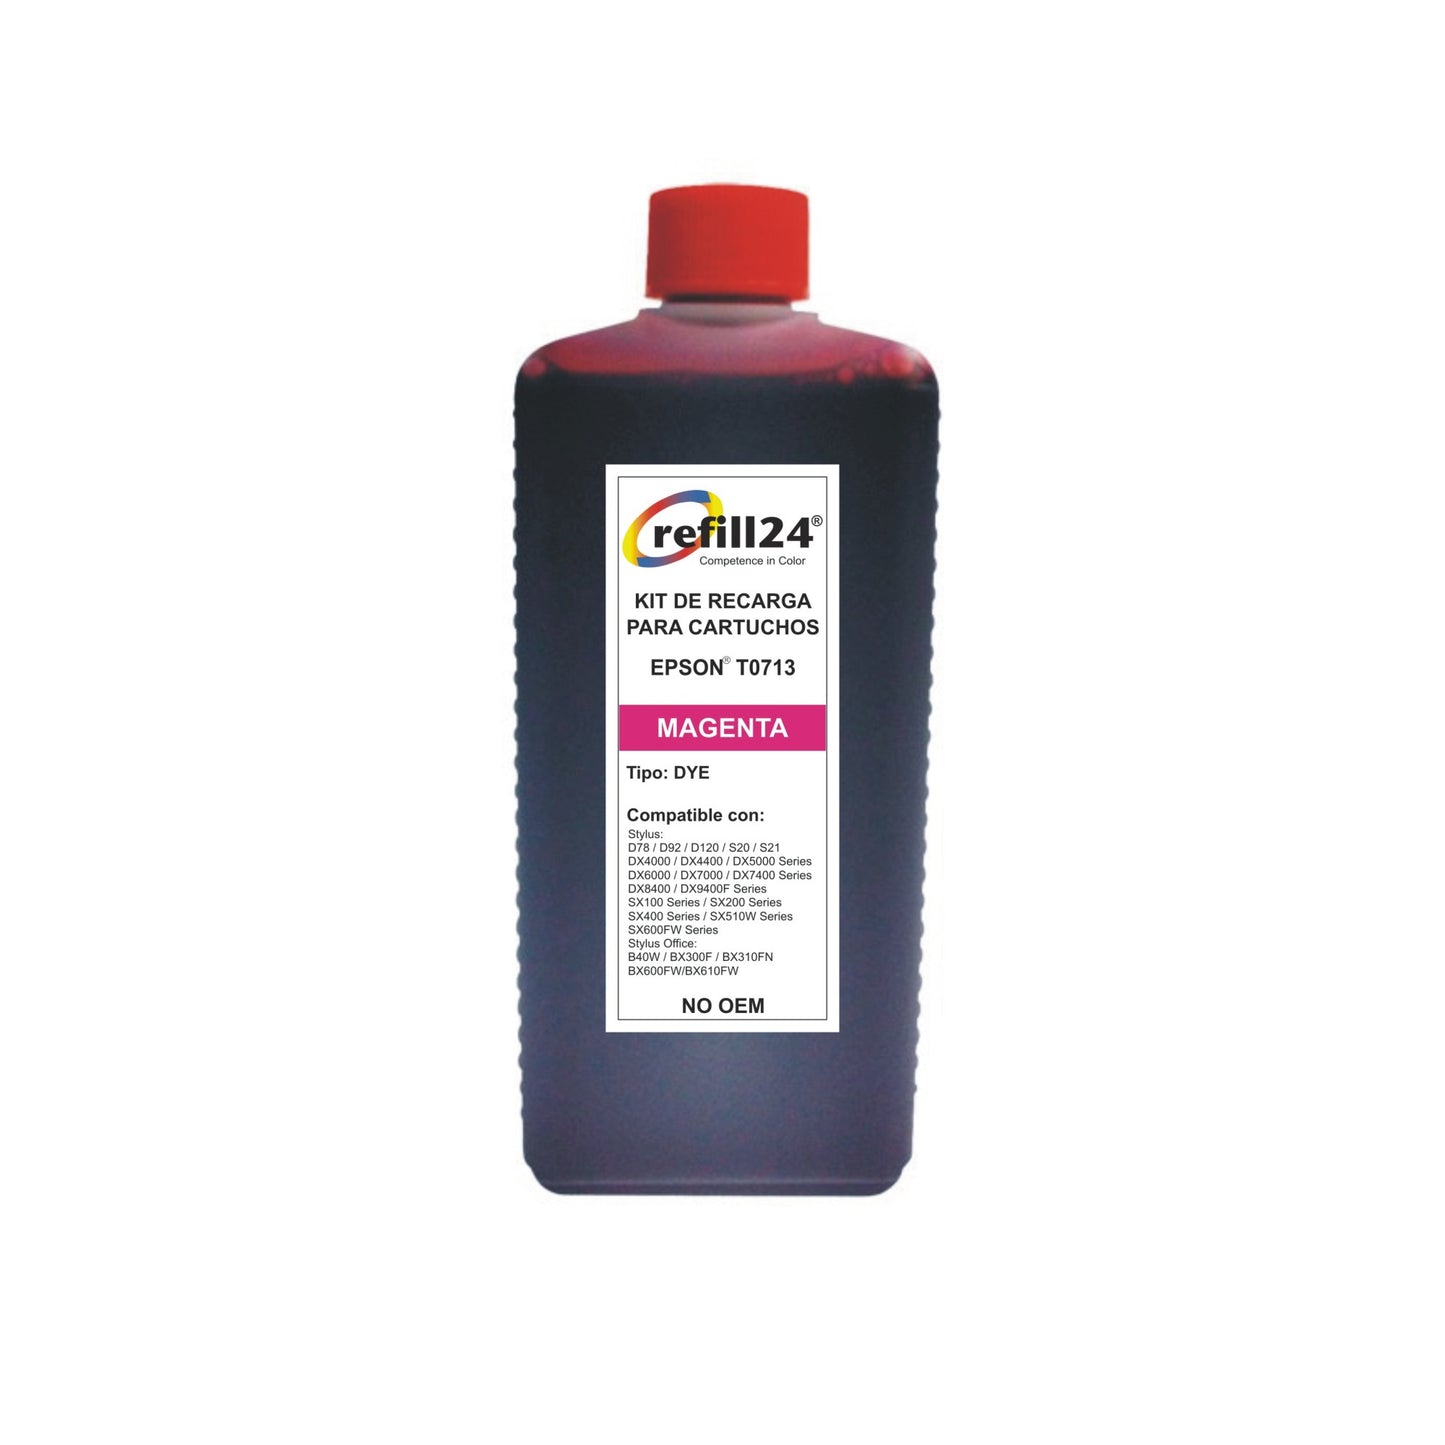 Tinta Premium Refill 24® para cartuchos Epson T0711/T0712/T0713/T0714